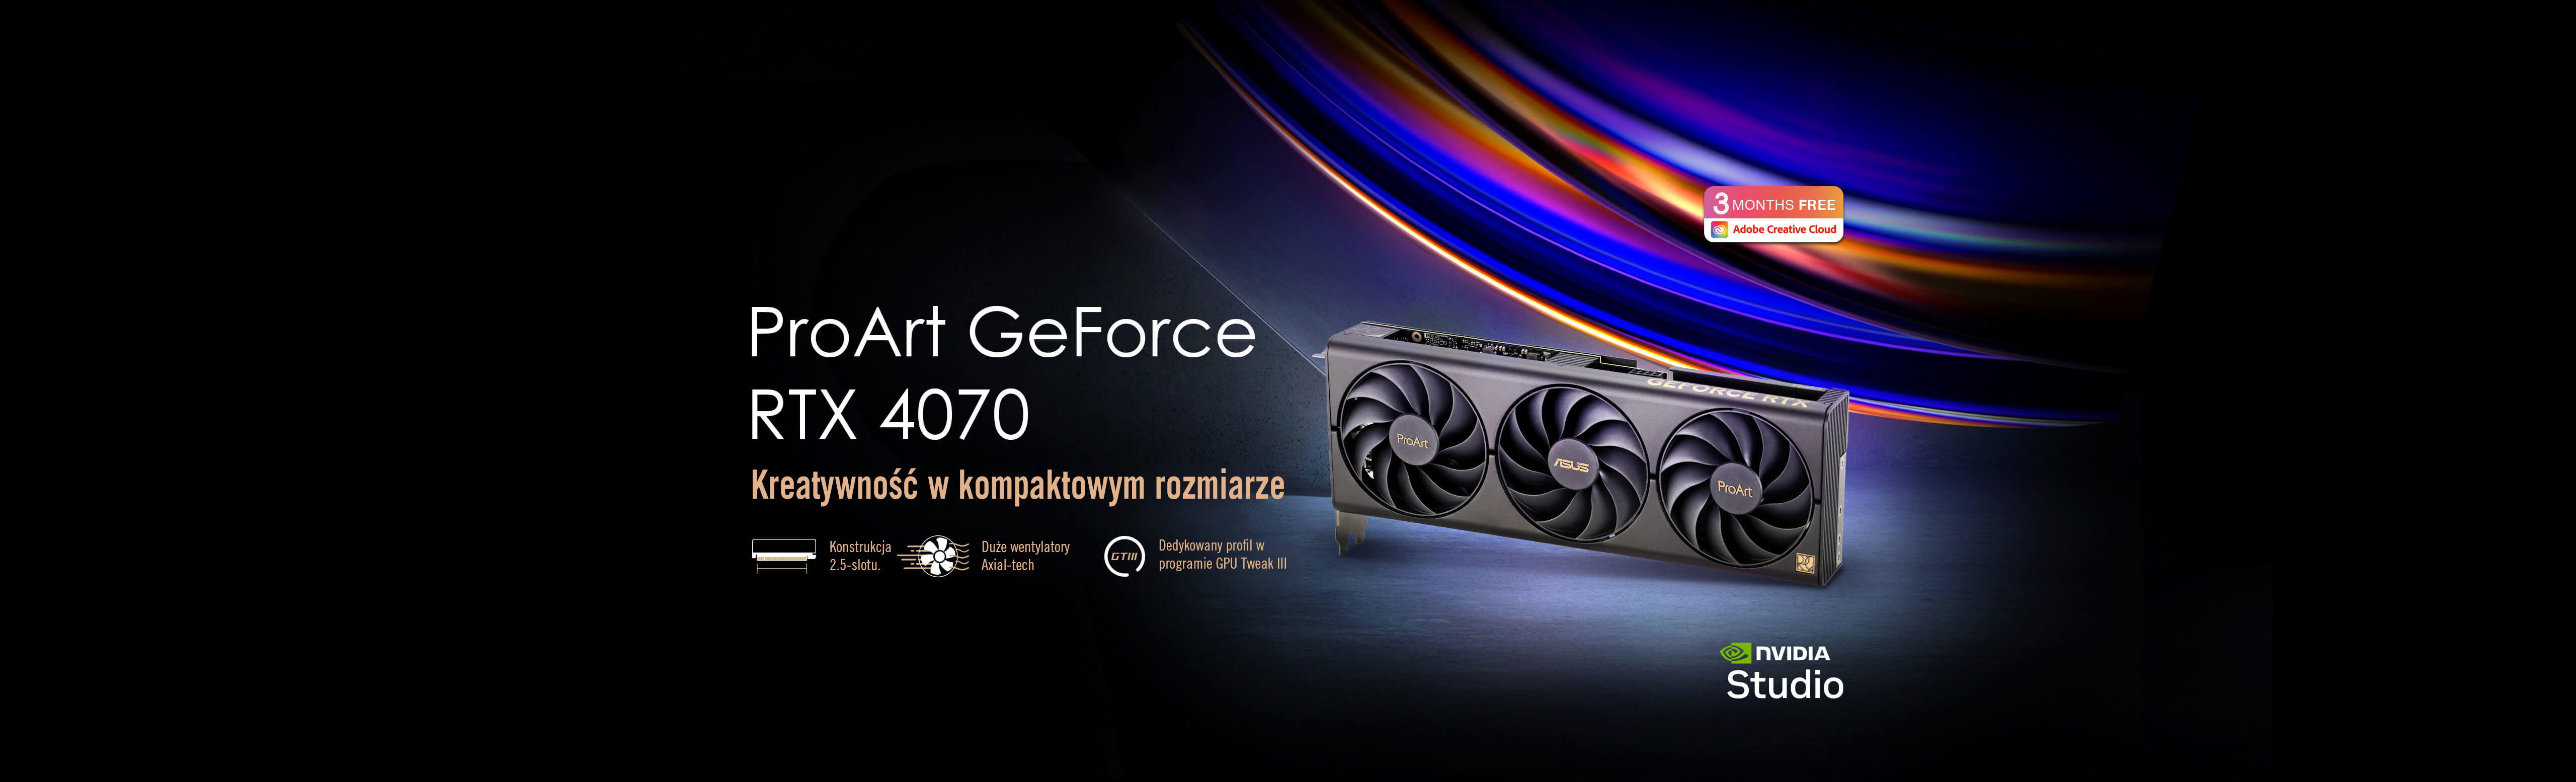 Karta graficzna ASUS ProArt GeForce RTX™ 4070 ustawiona na betonowej podłodze i znaki logo Adobe Creative Cloud i NVIDIA Studio